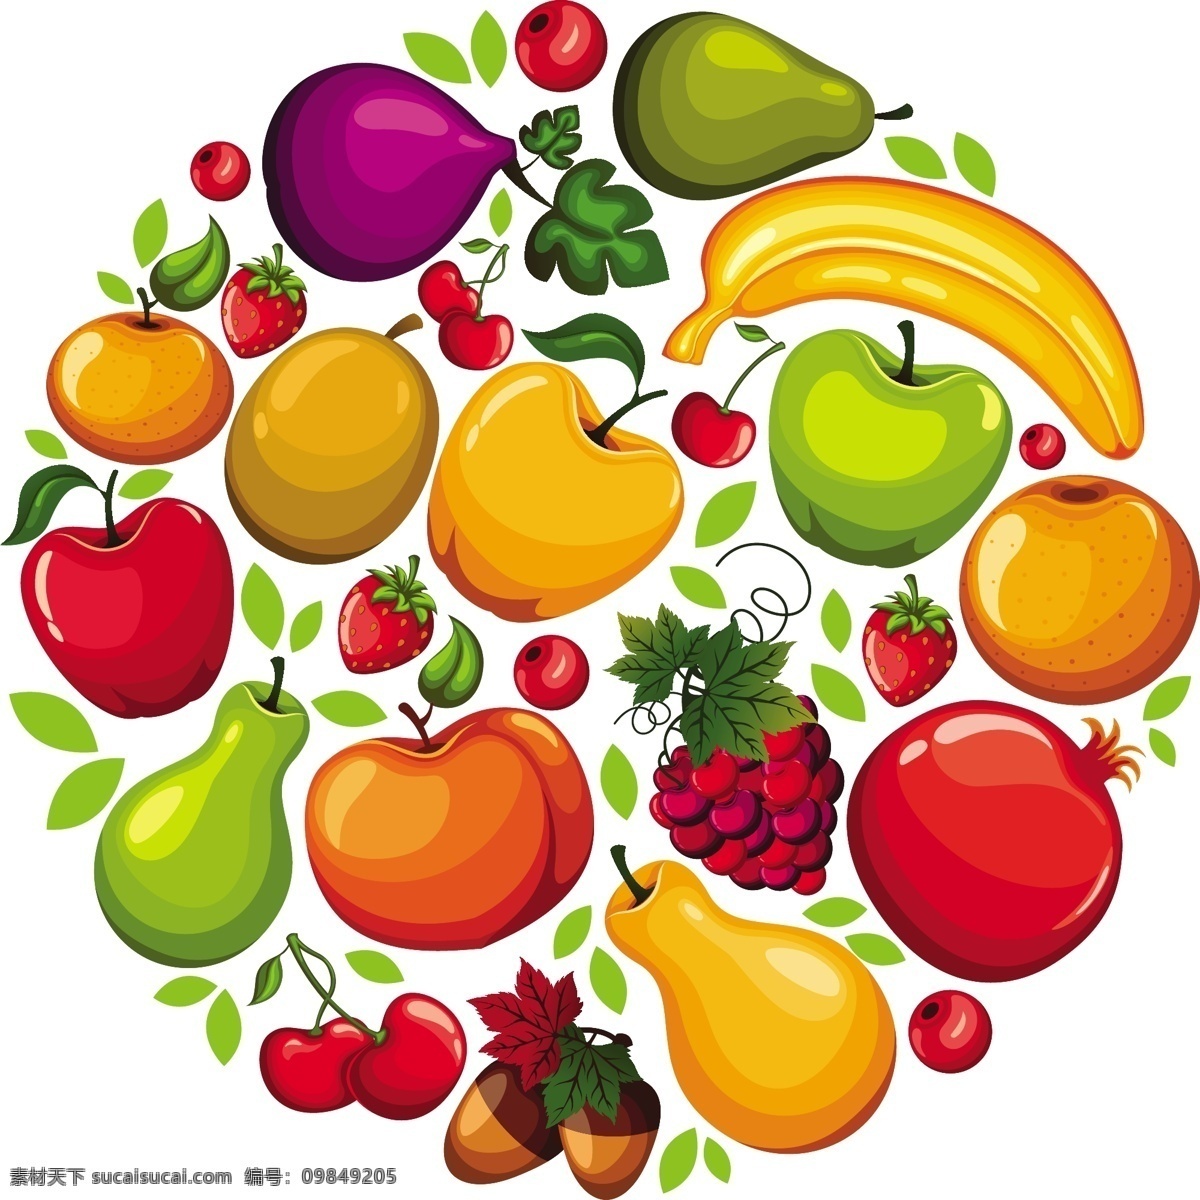 卡通水果 水果 香蕉 鸭梨 苹果 葡萄 石榴 蔬菜 卡通蔬菜 卡通设计 矢量